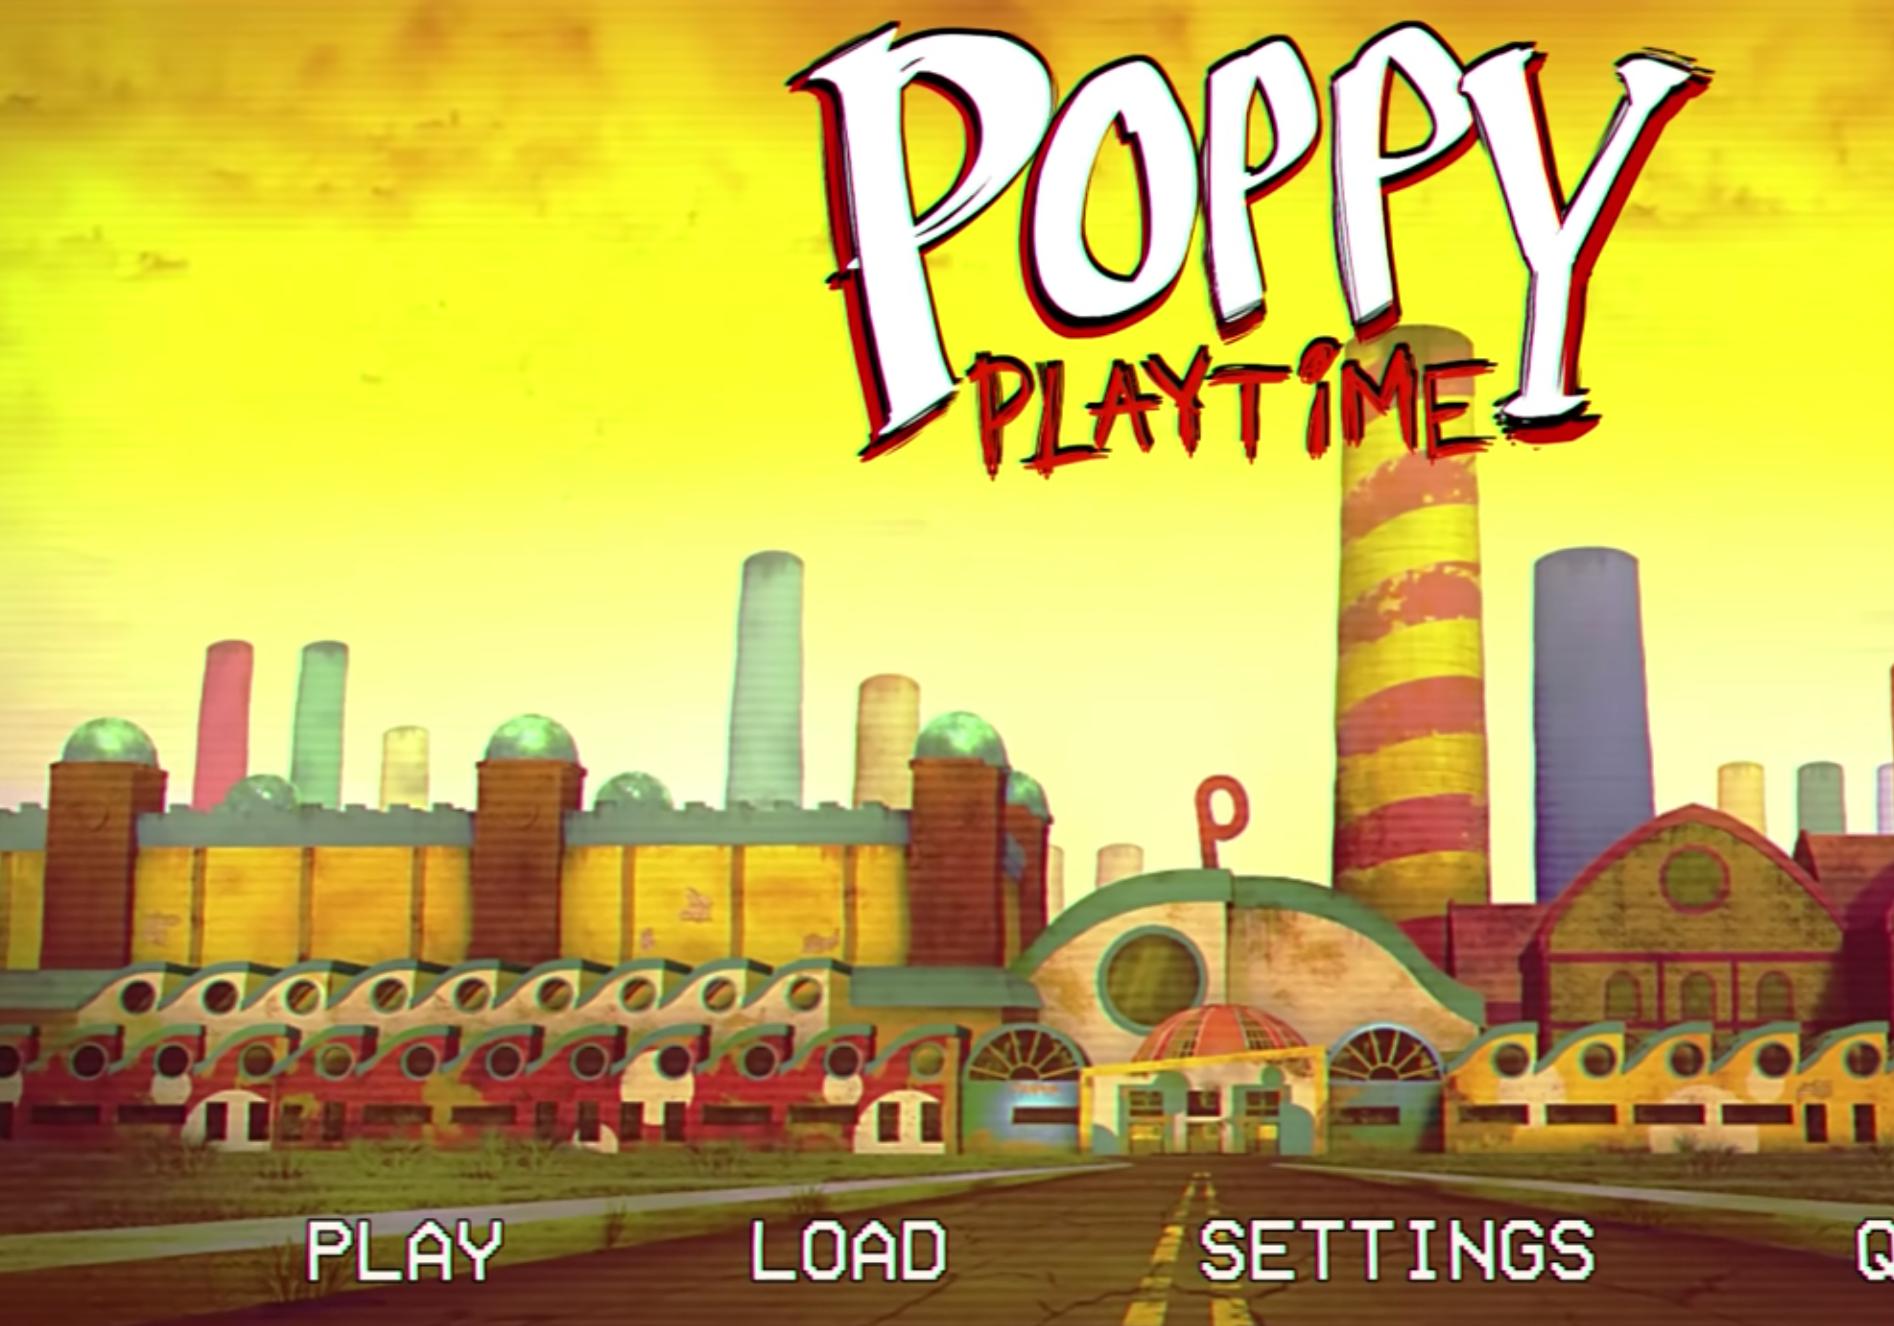 Игра poppy playtime mobile. Завод Playtime. Фабрика Poppy Playtime. Poppy Playtime завод снаружи. Poppy Playtime Poppy Play.